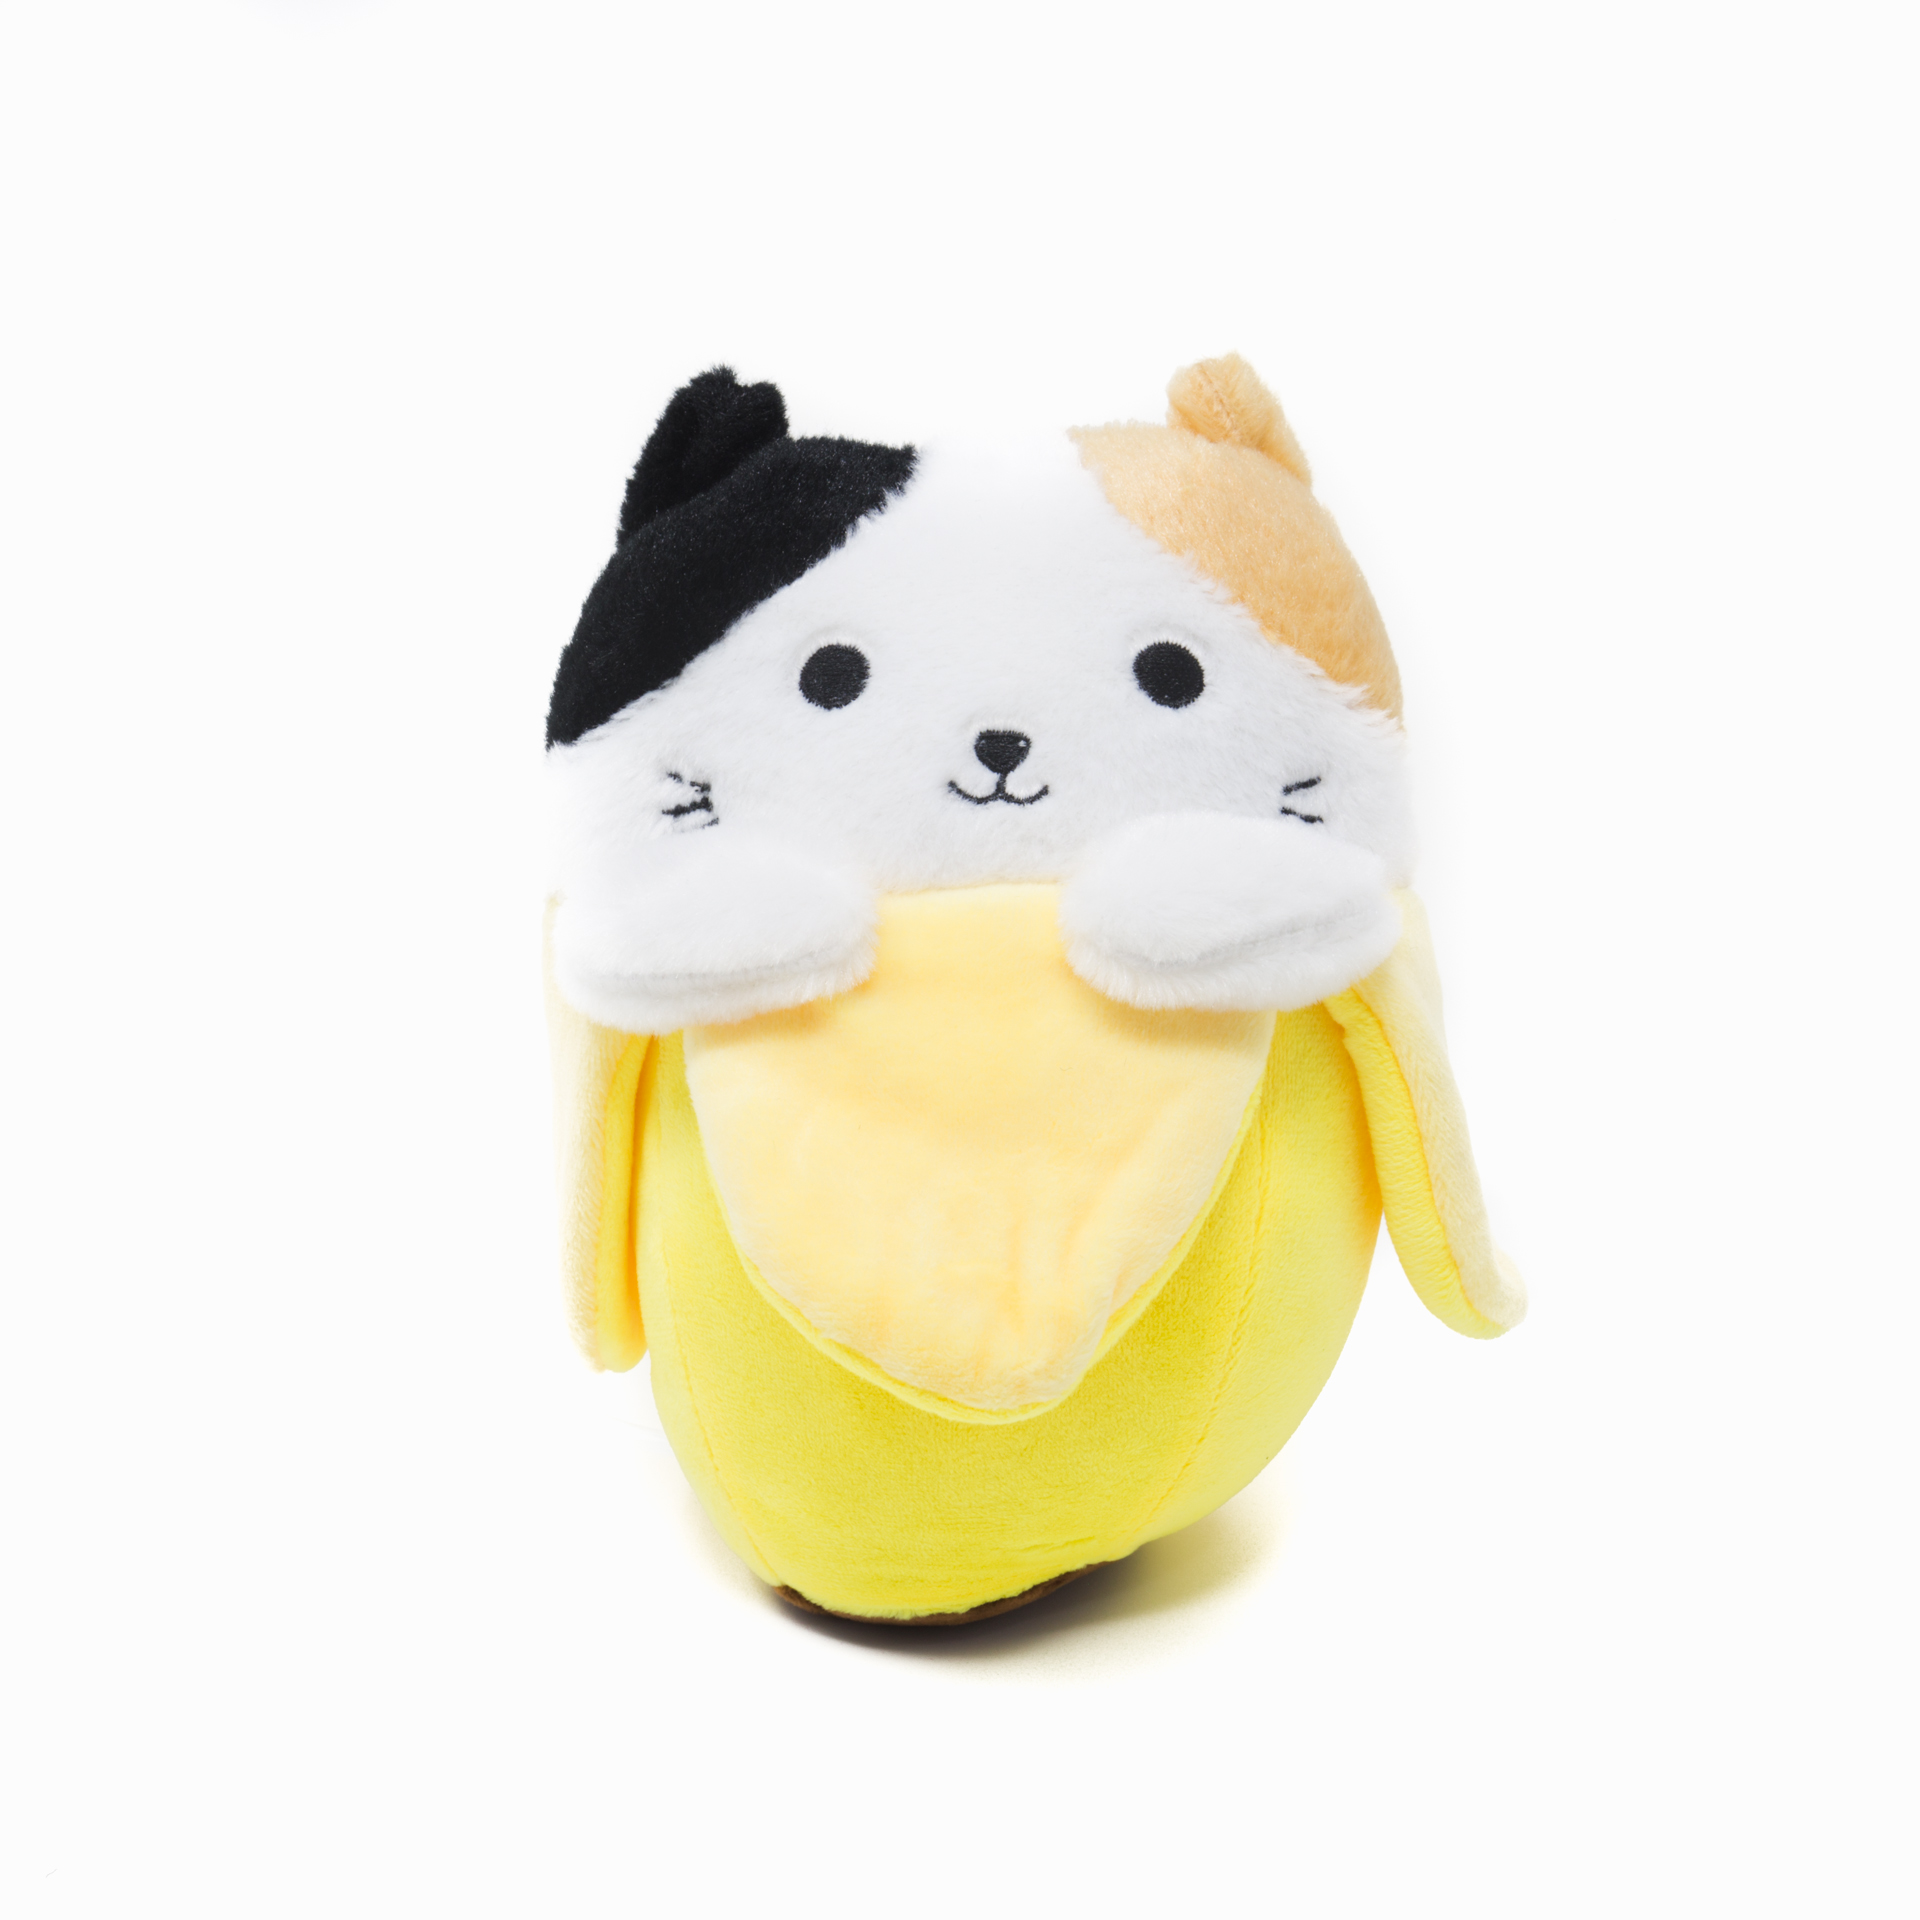 banana cat toy